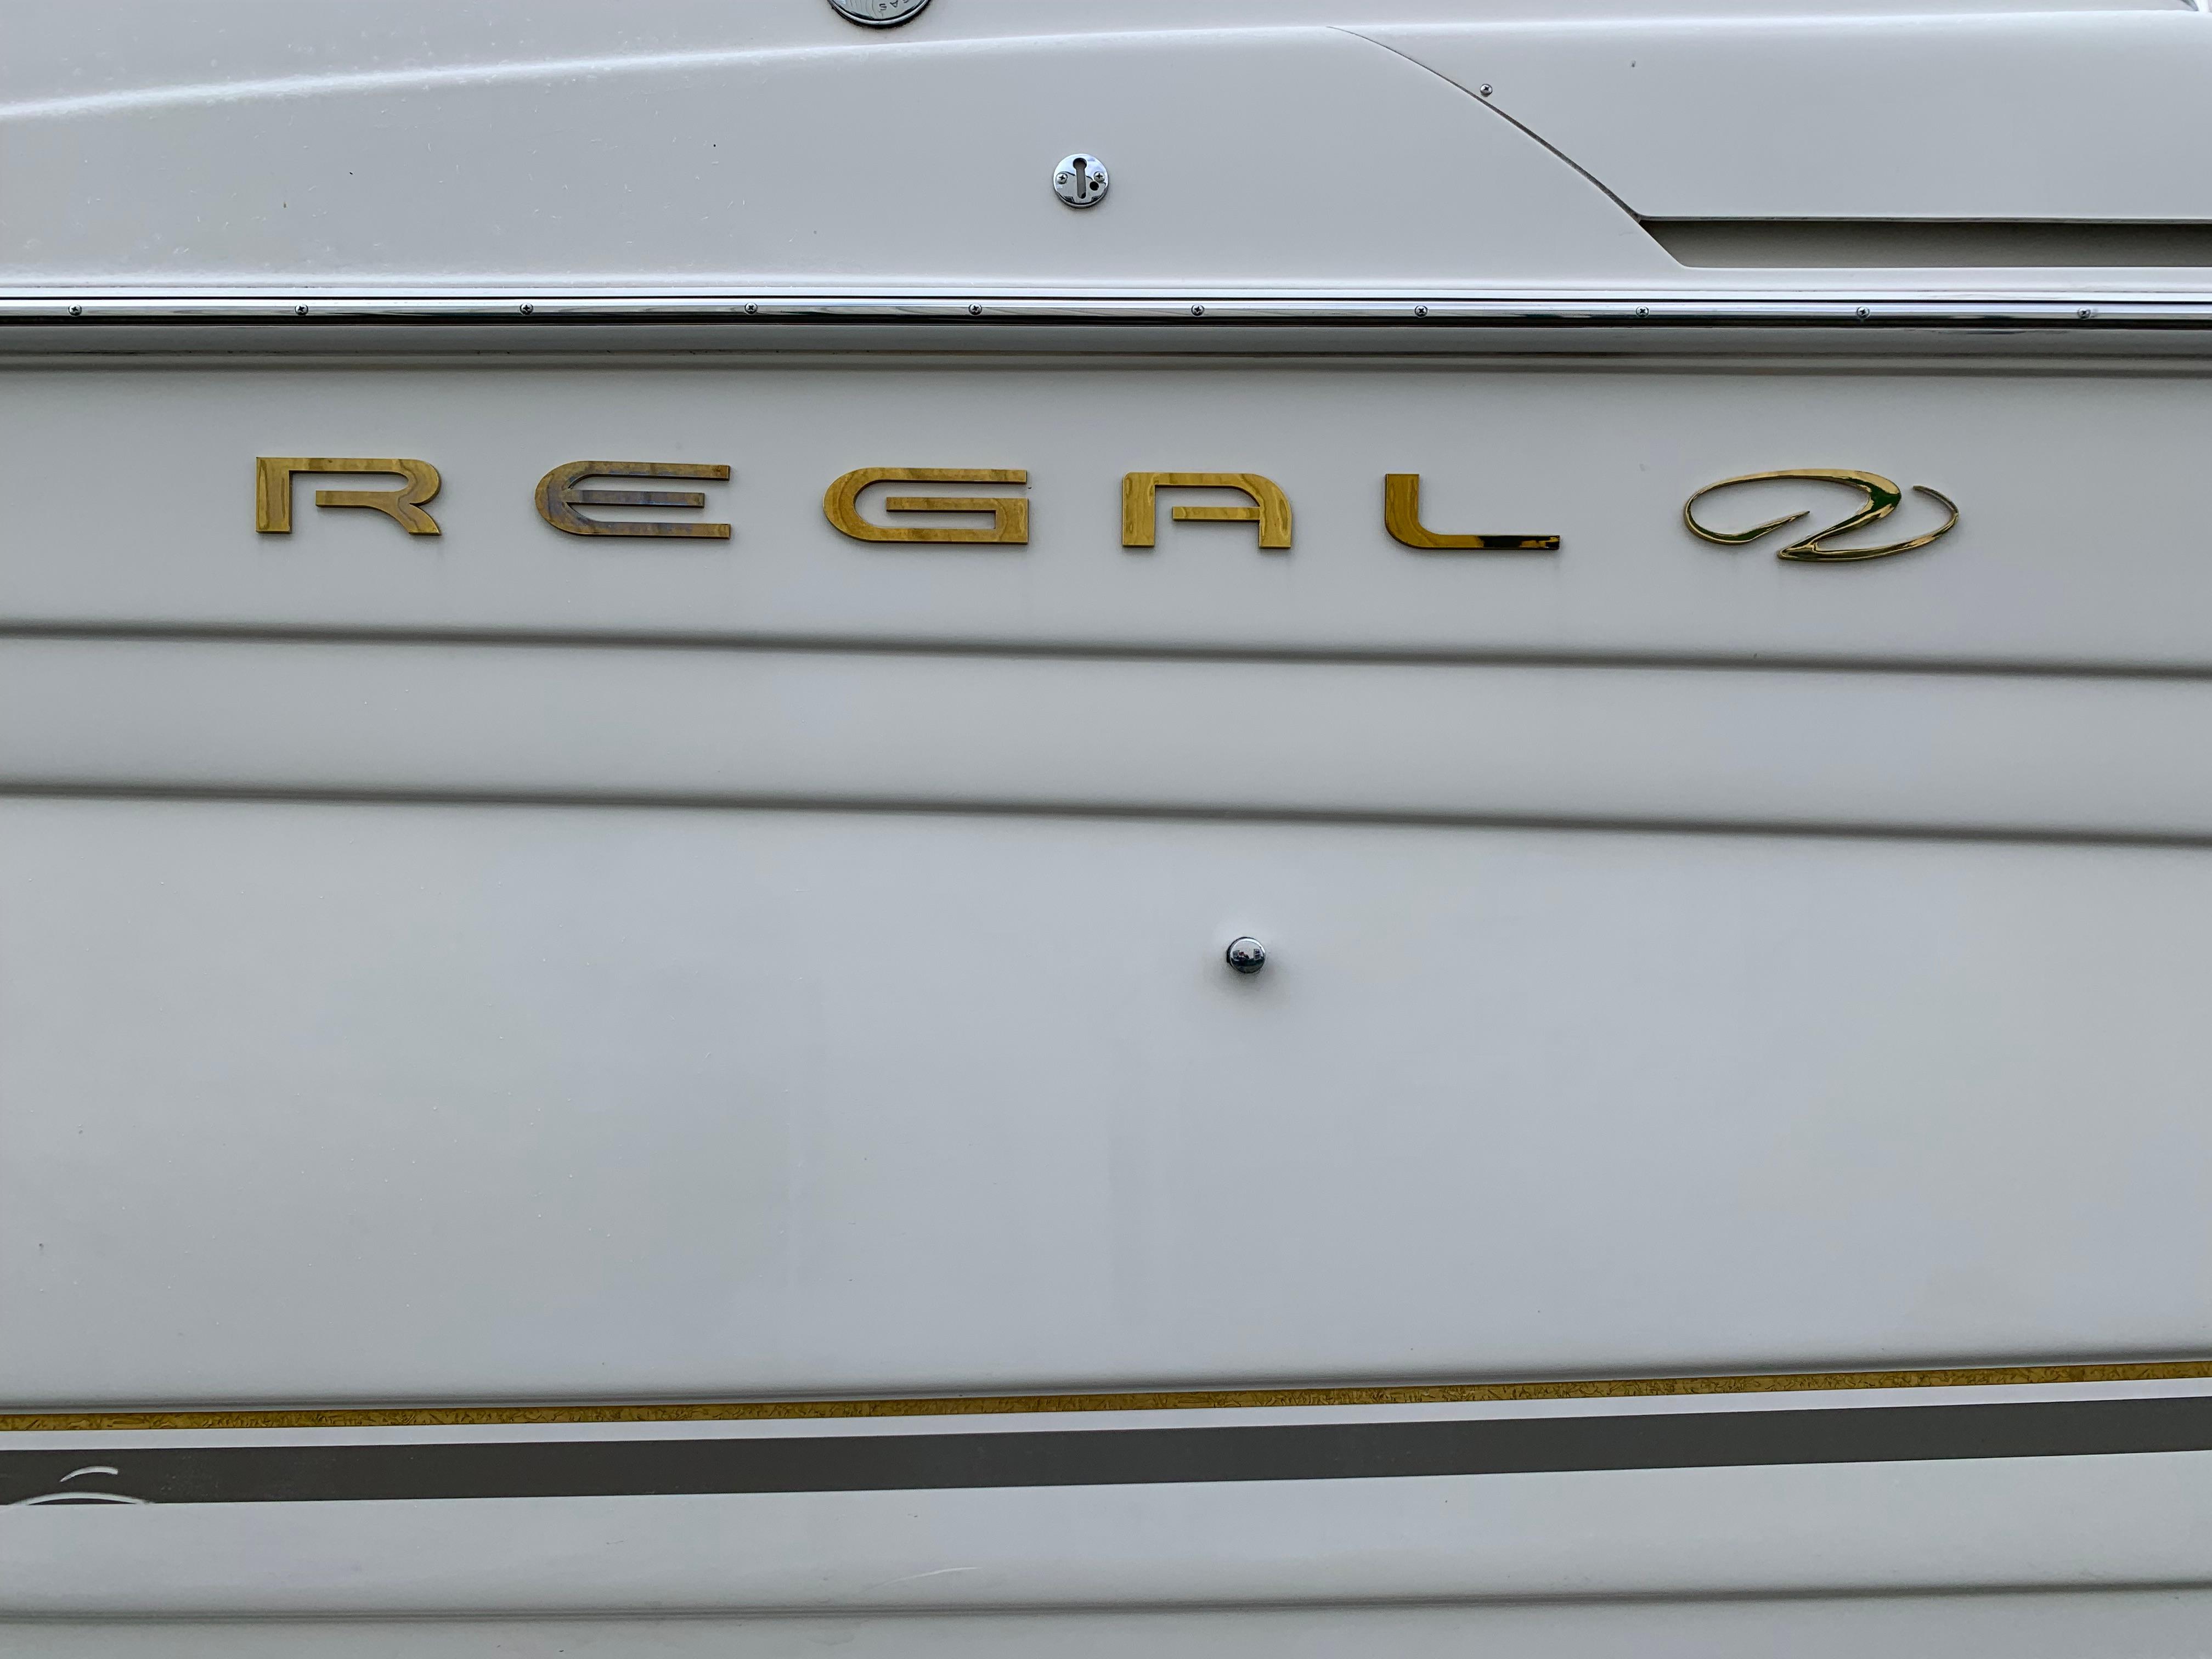 2002 Regal Commodore 2765